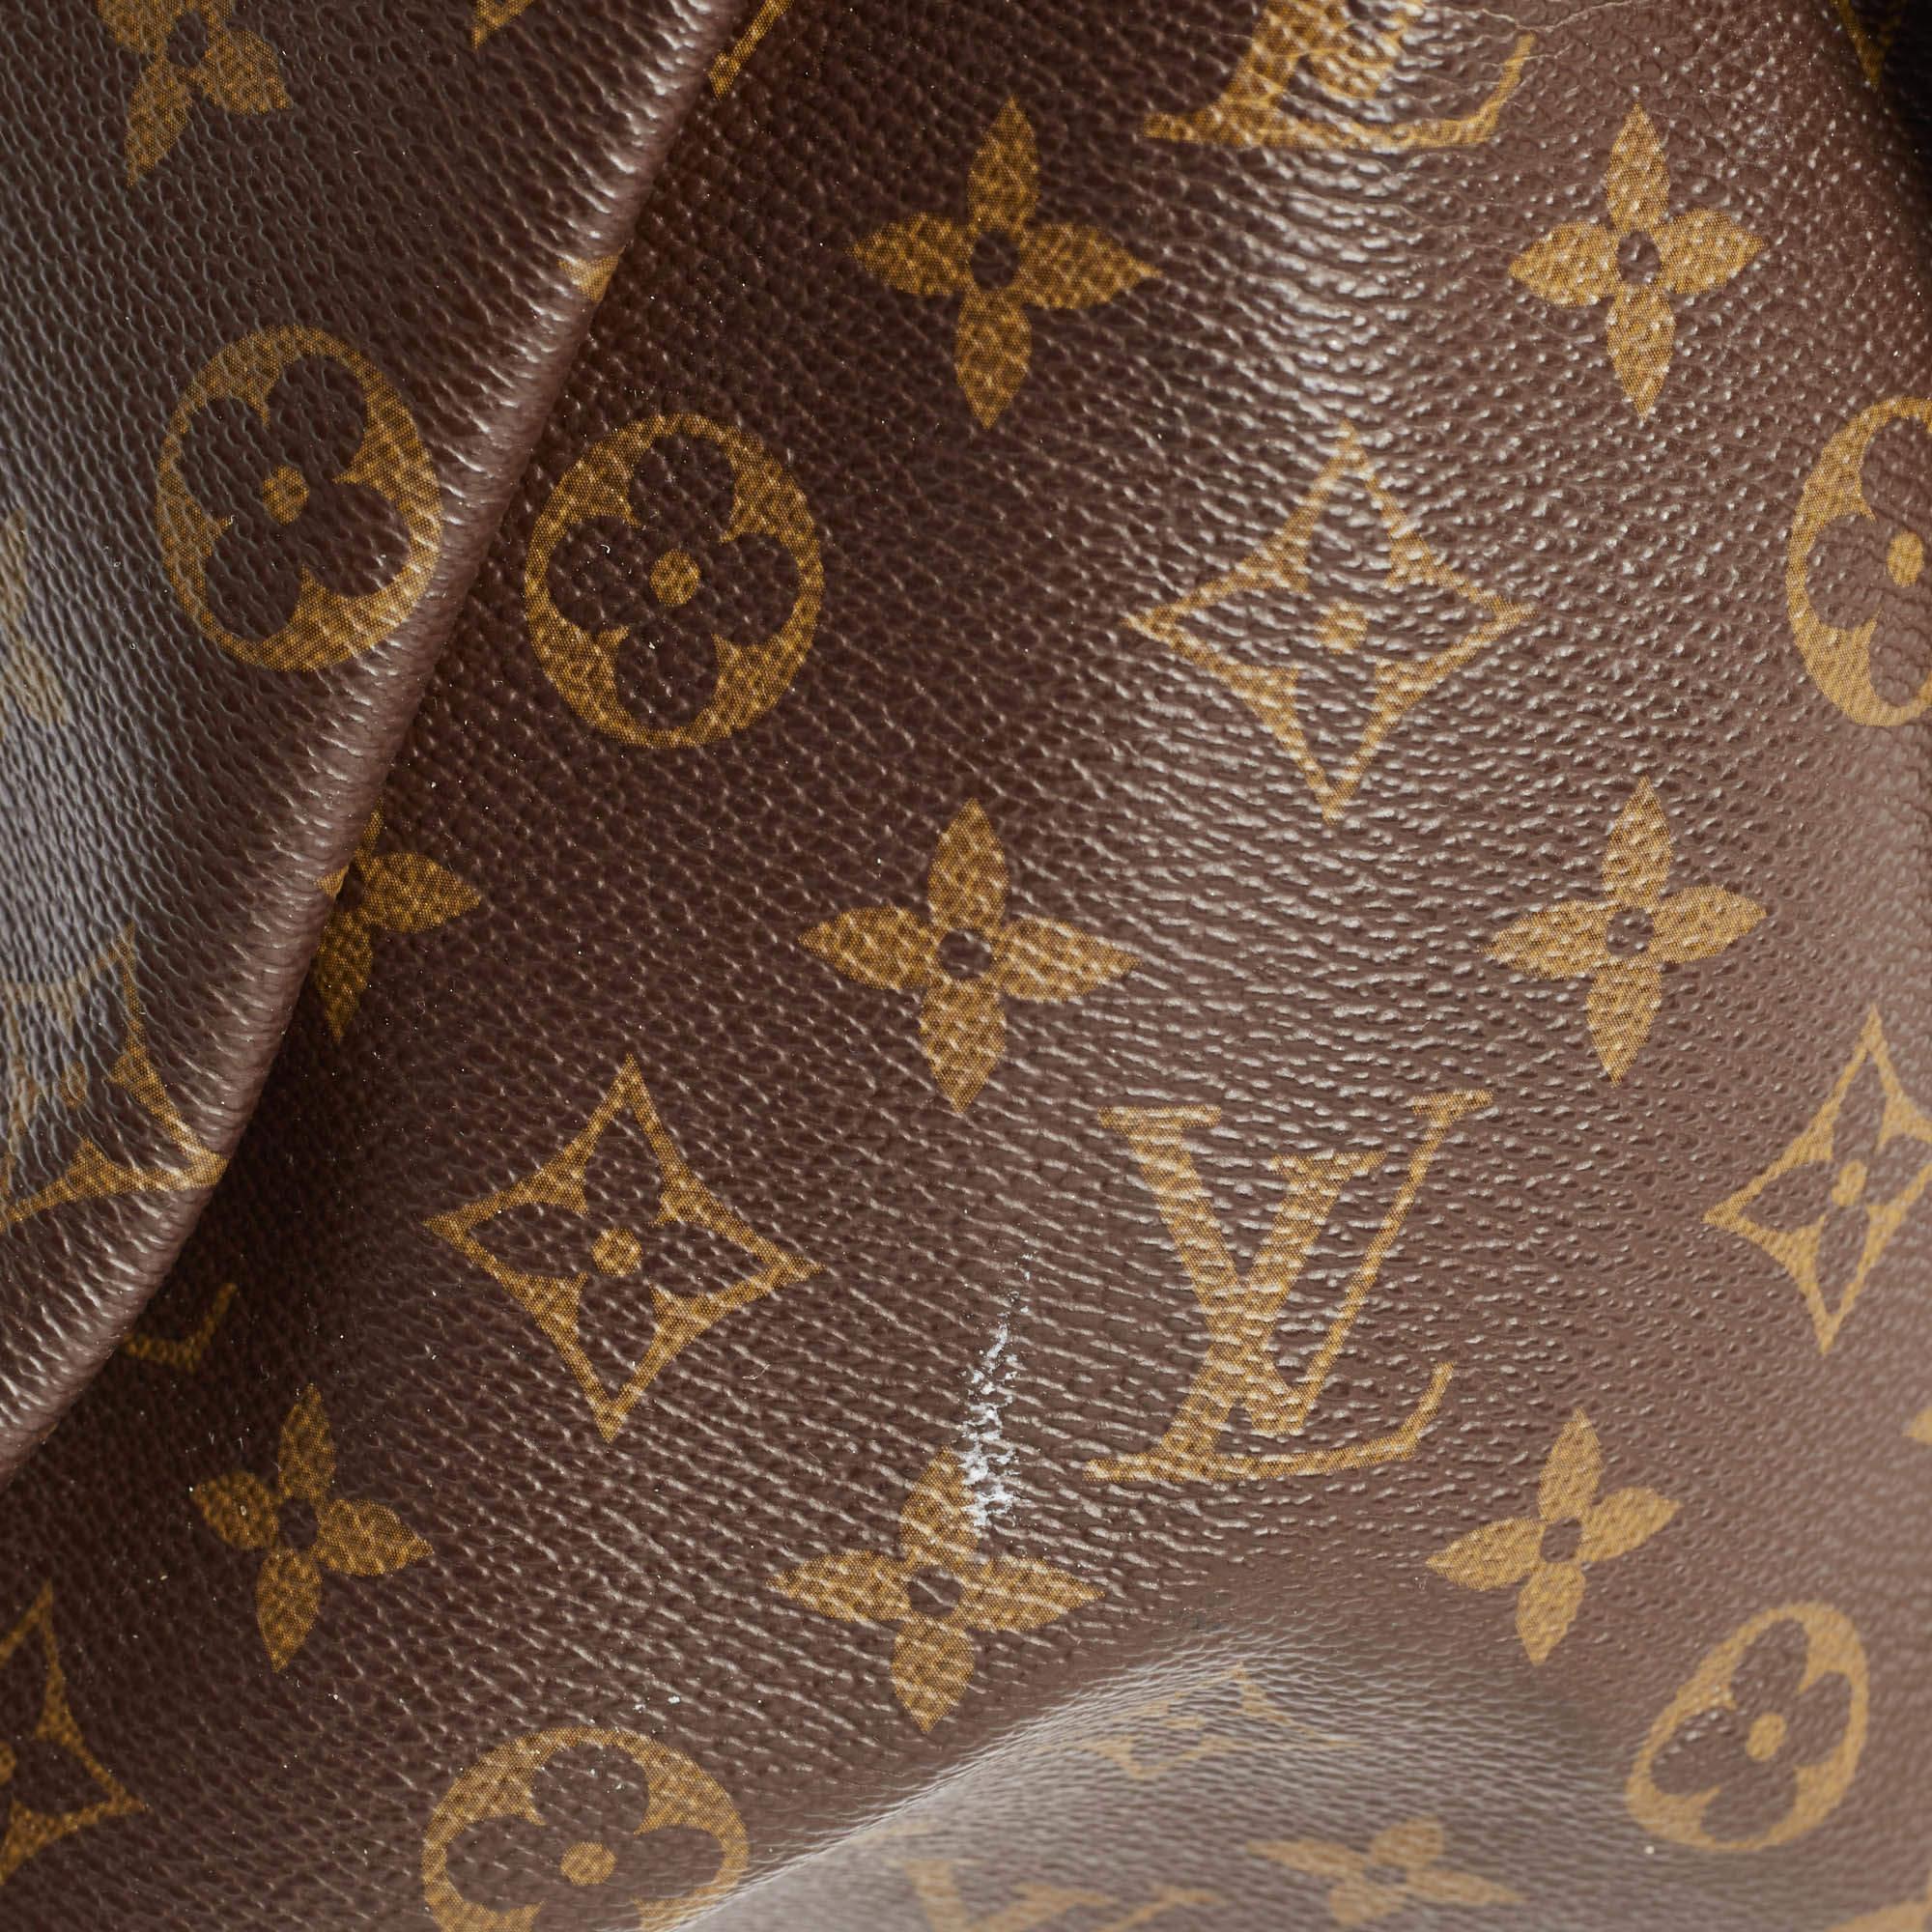 Louis Vuitton Monogram Canvas Artsy MM Bag For Sale 5